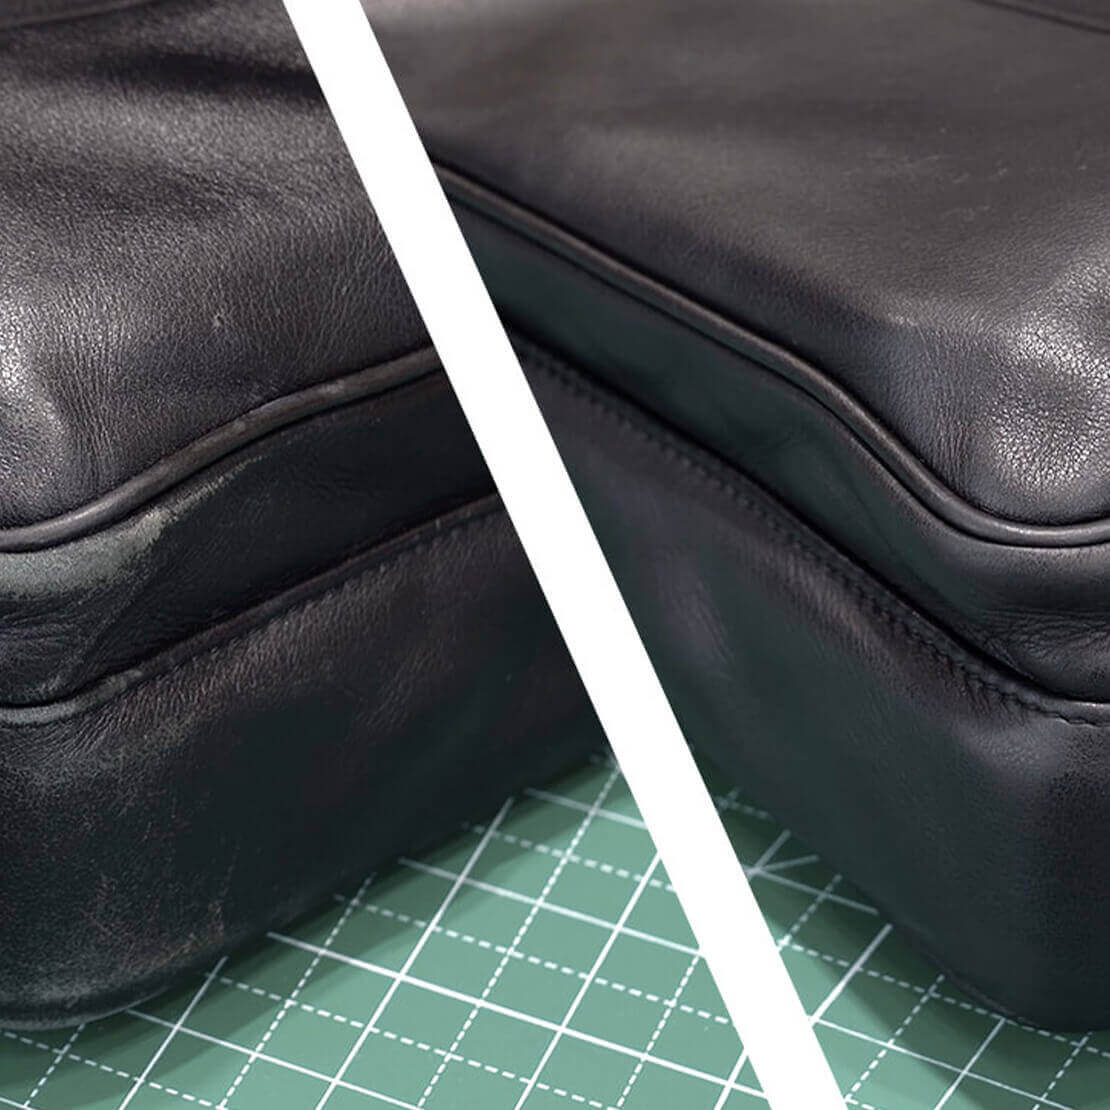 Réparer un cuir craquelé sur son sac : nos conseils